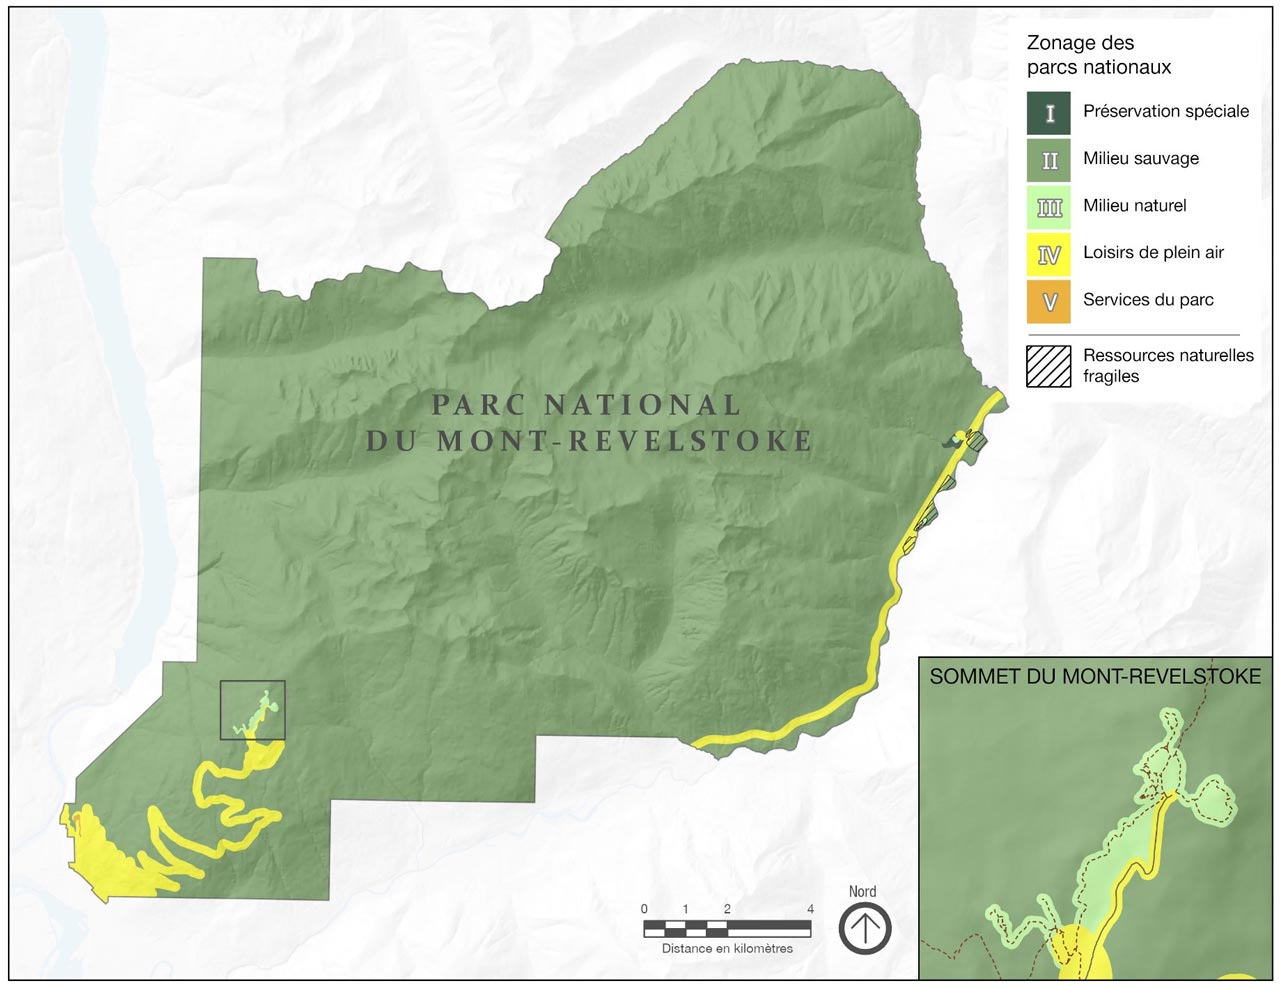 Une carte qui montre le parc national du Canada du Mont-Revelstoke. Les régions sont illustrées sur la carte selon un code de couleur en vue d’indiquer leur classification à titre de zone d’un certain type ou de secteur écologiquement fragile. Une carte en médaillon montre une image agrandie du zonage au sommet du Mont-Revelstoke.